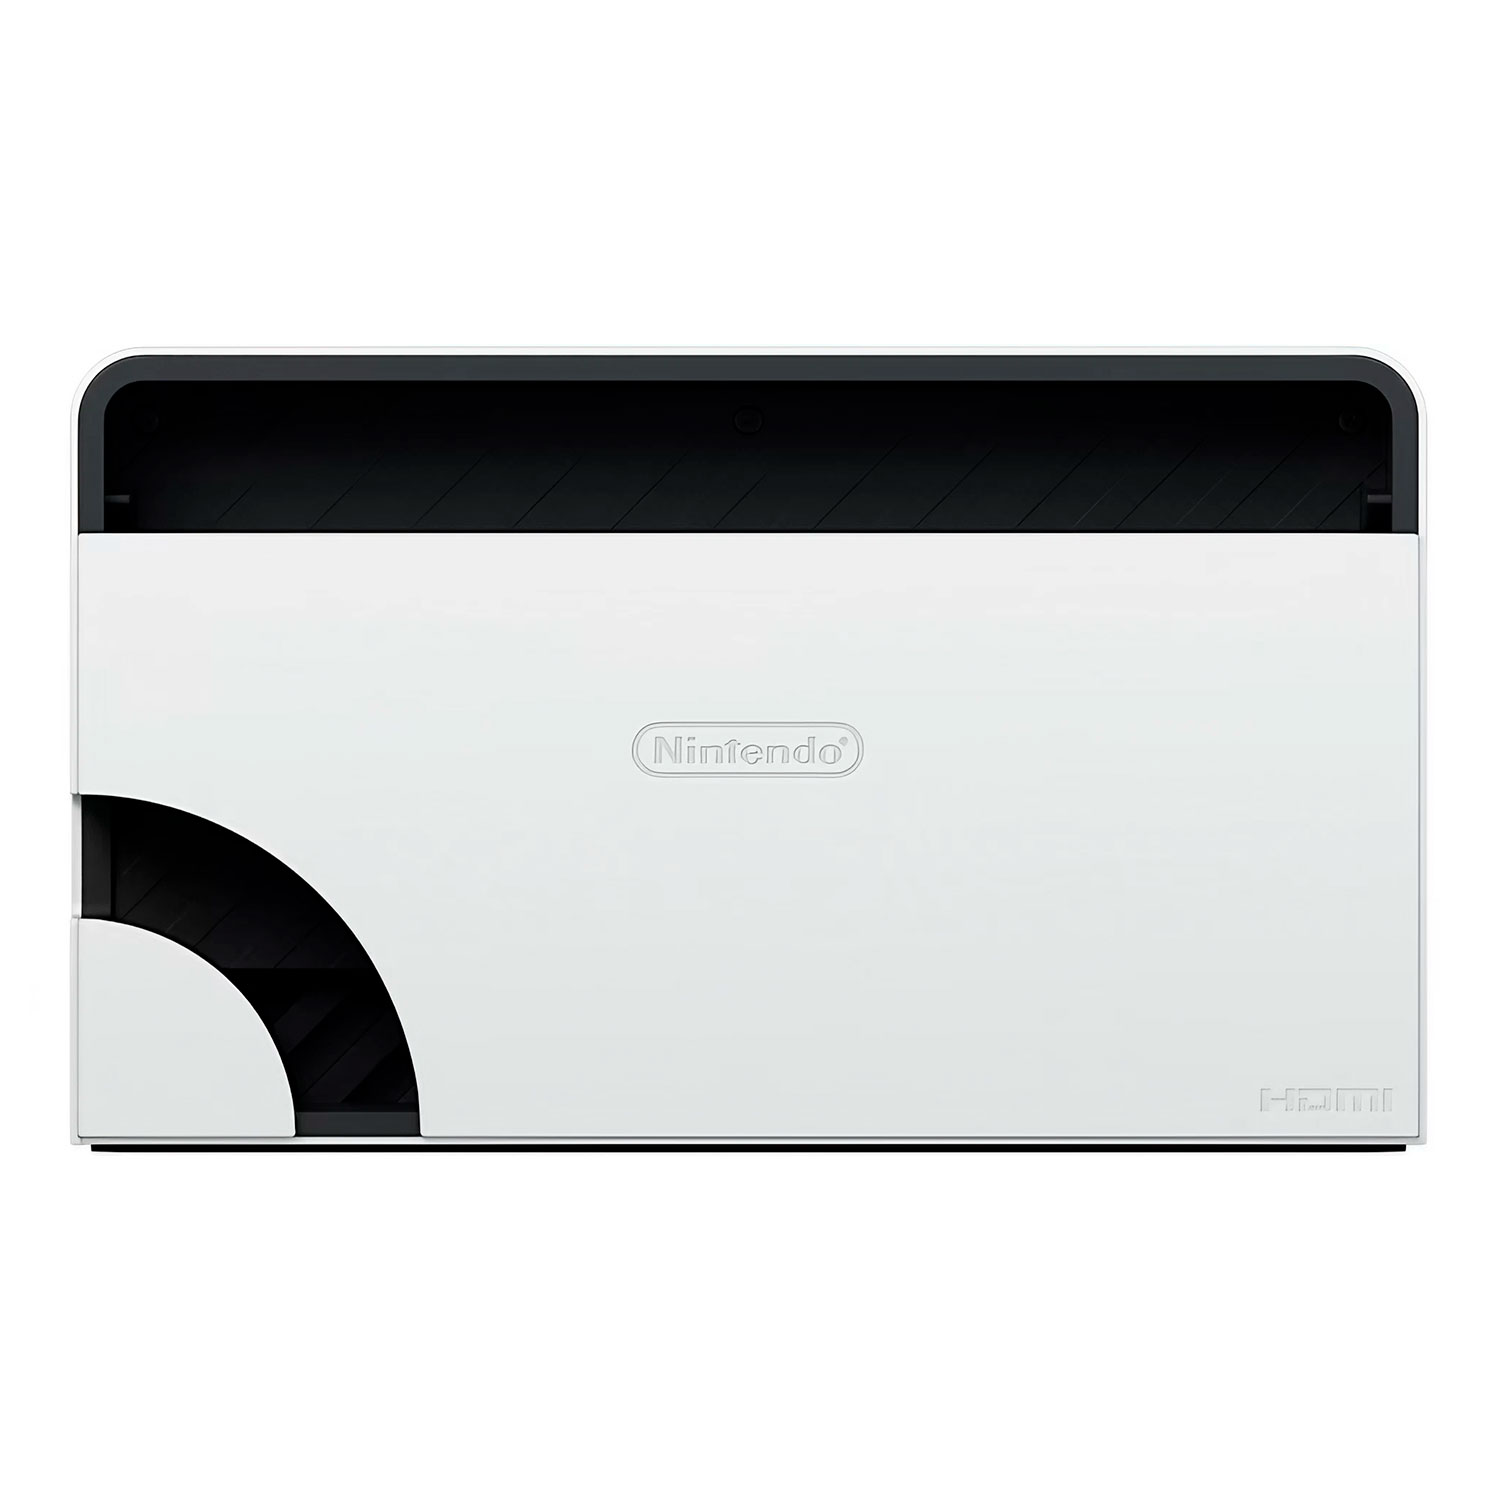 Dock de Carregamento para Nintendo Switch OLED - Branco (Sem Caixa)